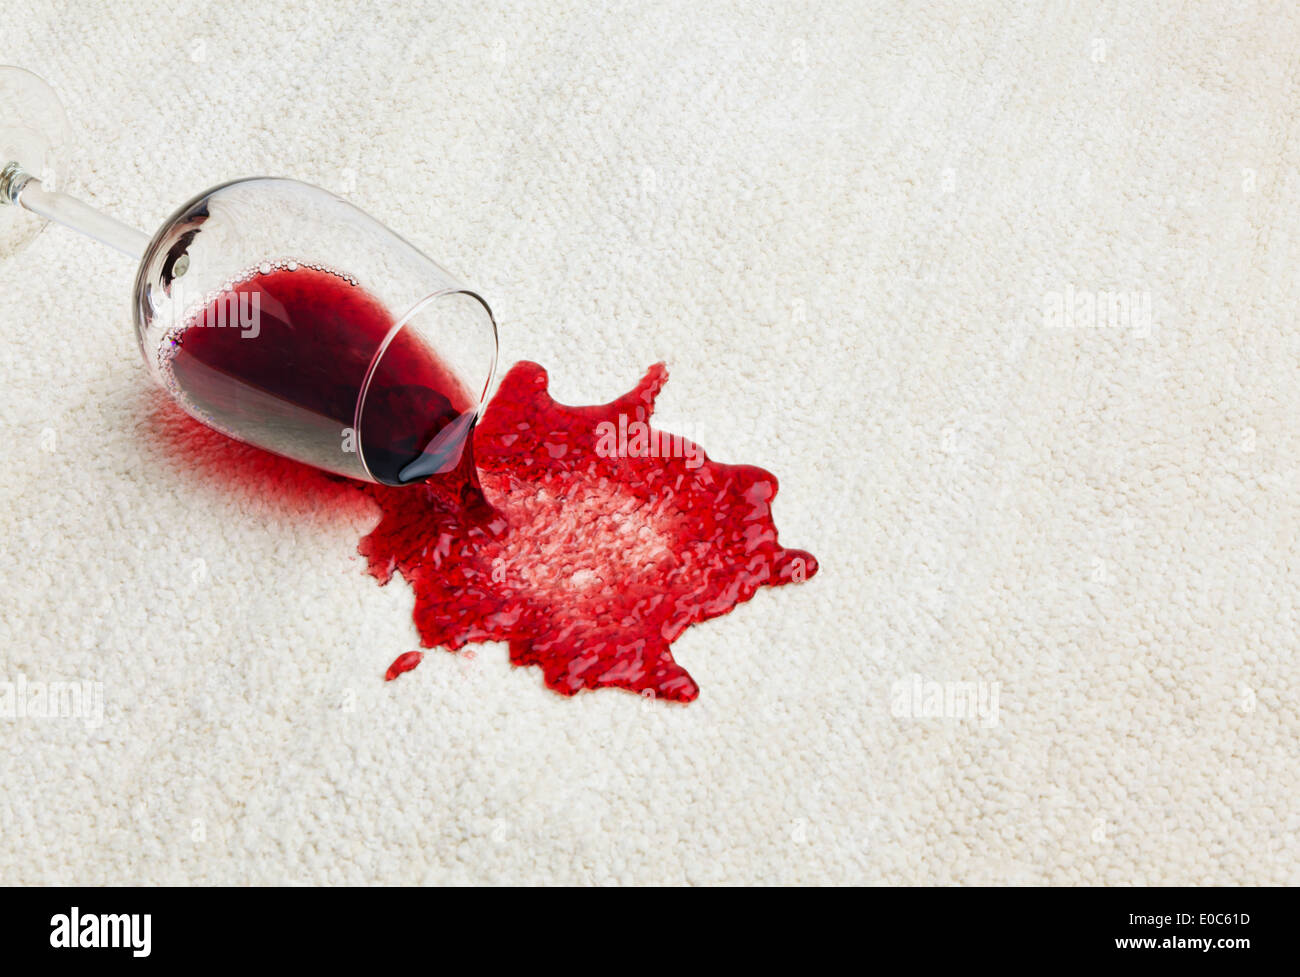 Red wine is tipped out on a carpet. Umgeleertes glass, Roter Wein wird auf einem Teppich ausgeschuettet. Umgeleertes Glas Stock Photo